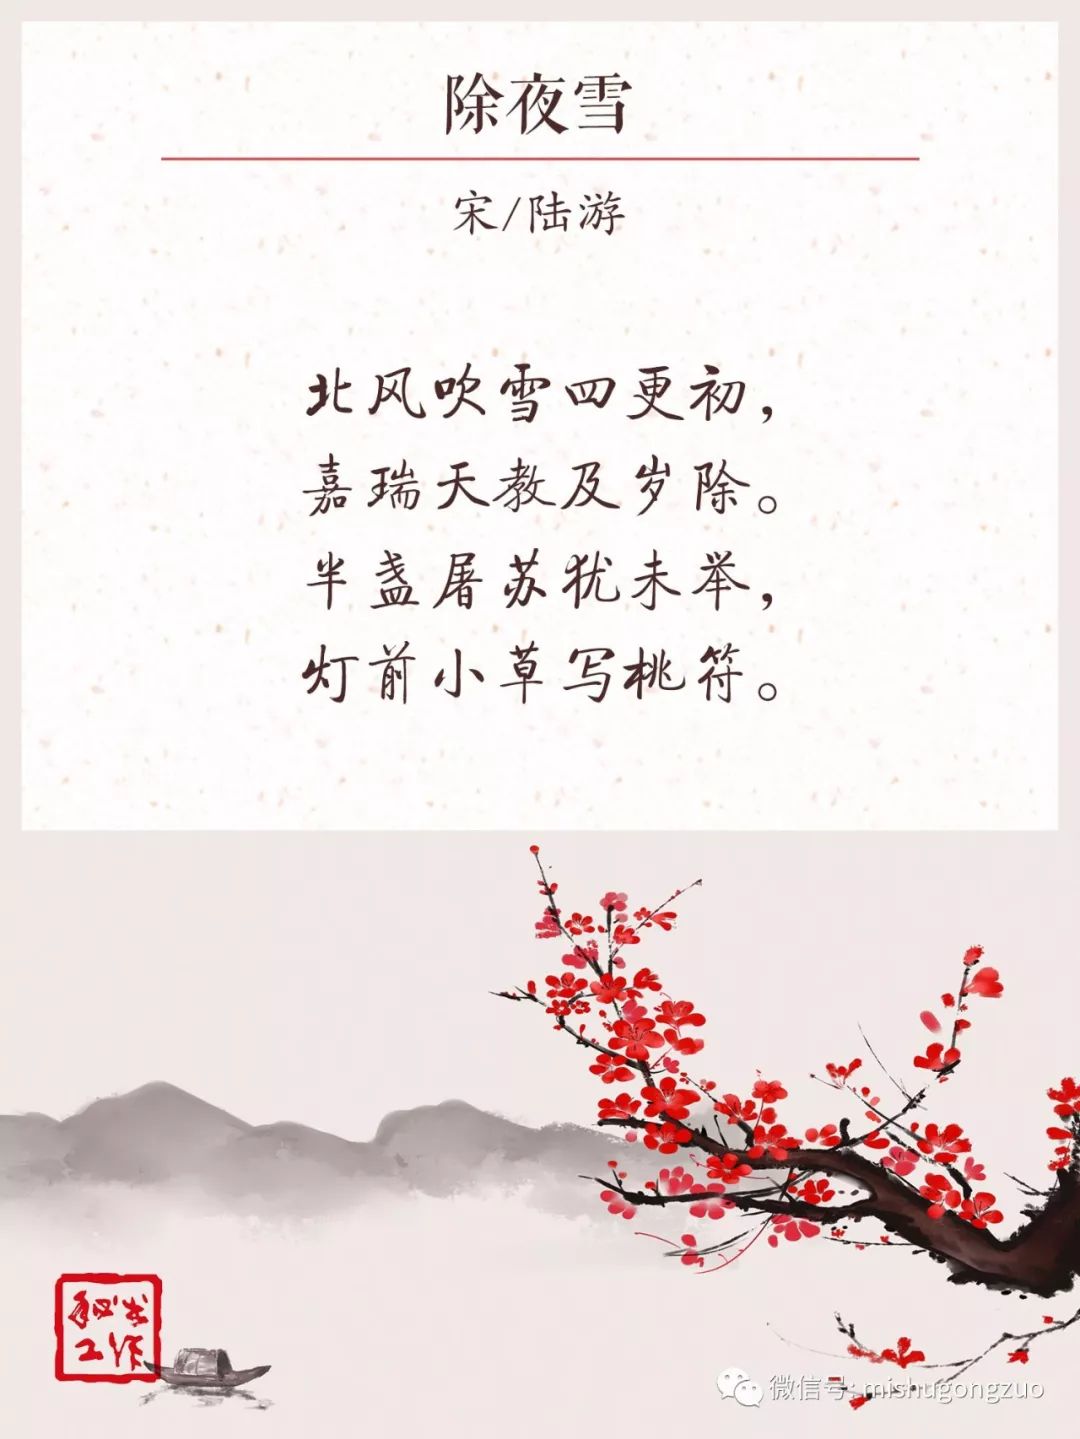 关于春节的诗句祝福图片